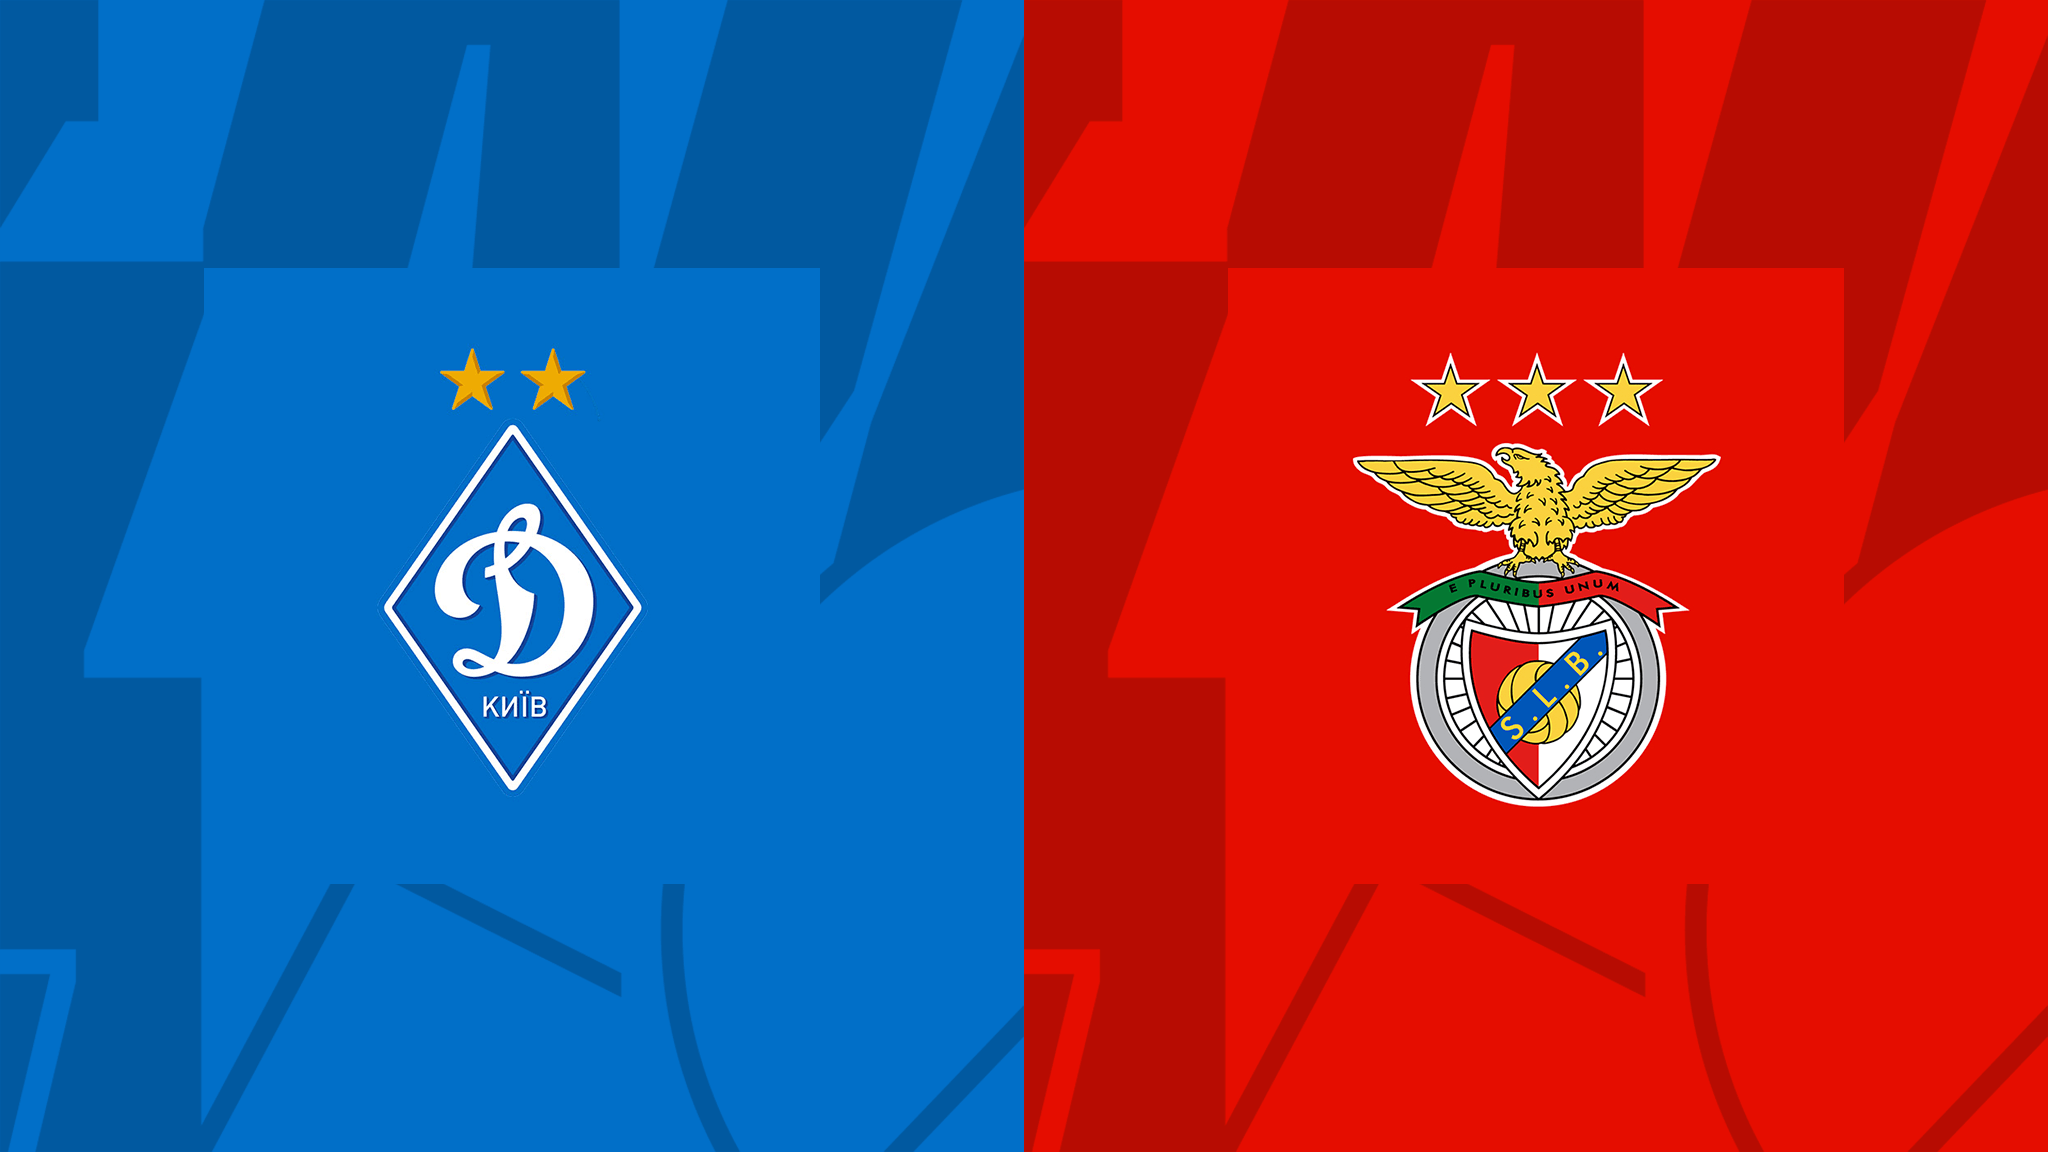  مشاهدة مباراة بنفيكا و دينامو كييف بث مباشر 17/08/2022 Dynamo Kyiv vs Benfica